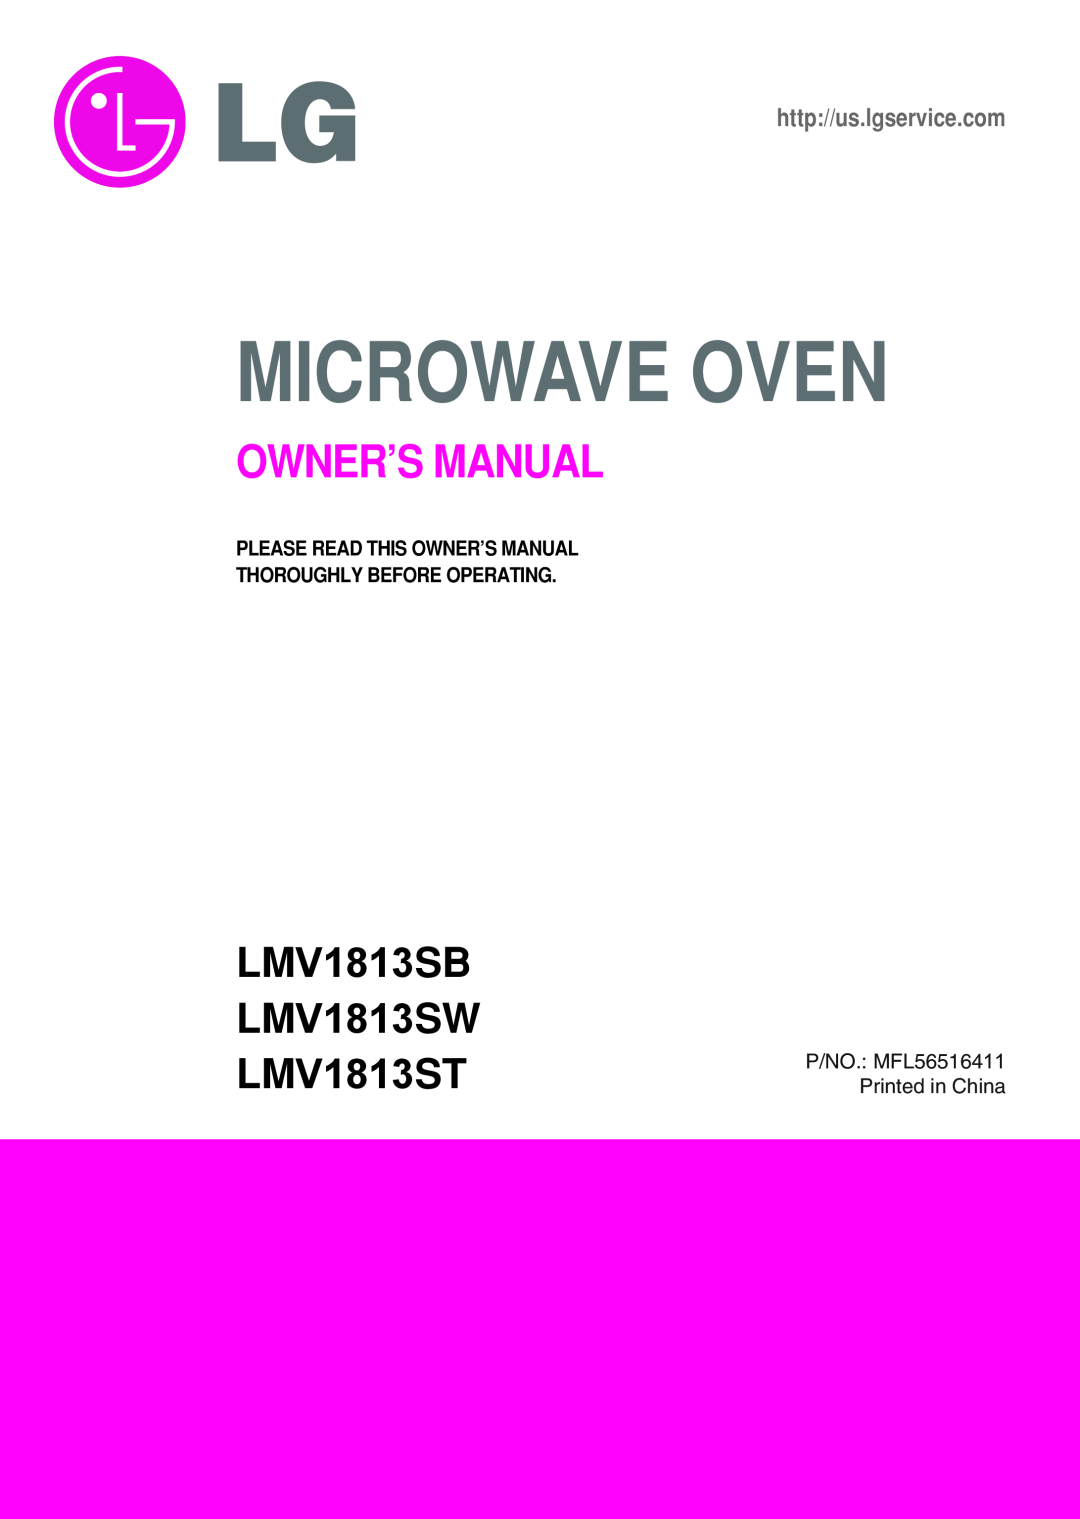 LG Electronics owner manual LMV1813SB LMV1813SW LMV1813ST, Microwave Oven, http//us.lgservice.com 